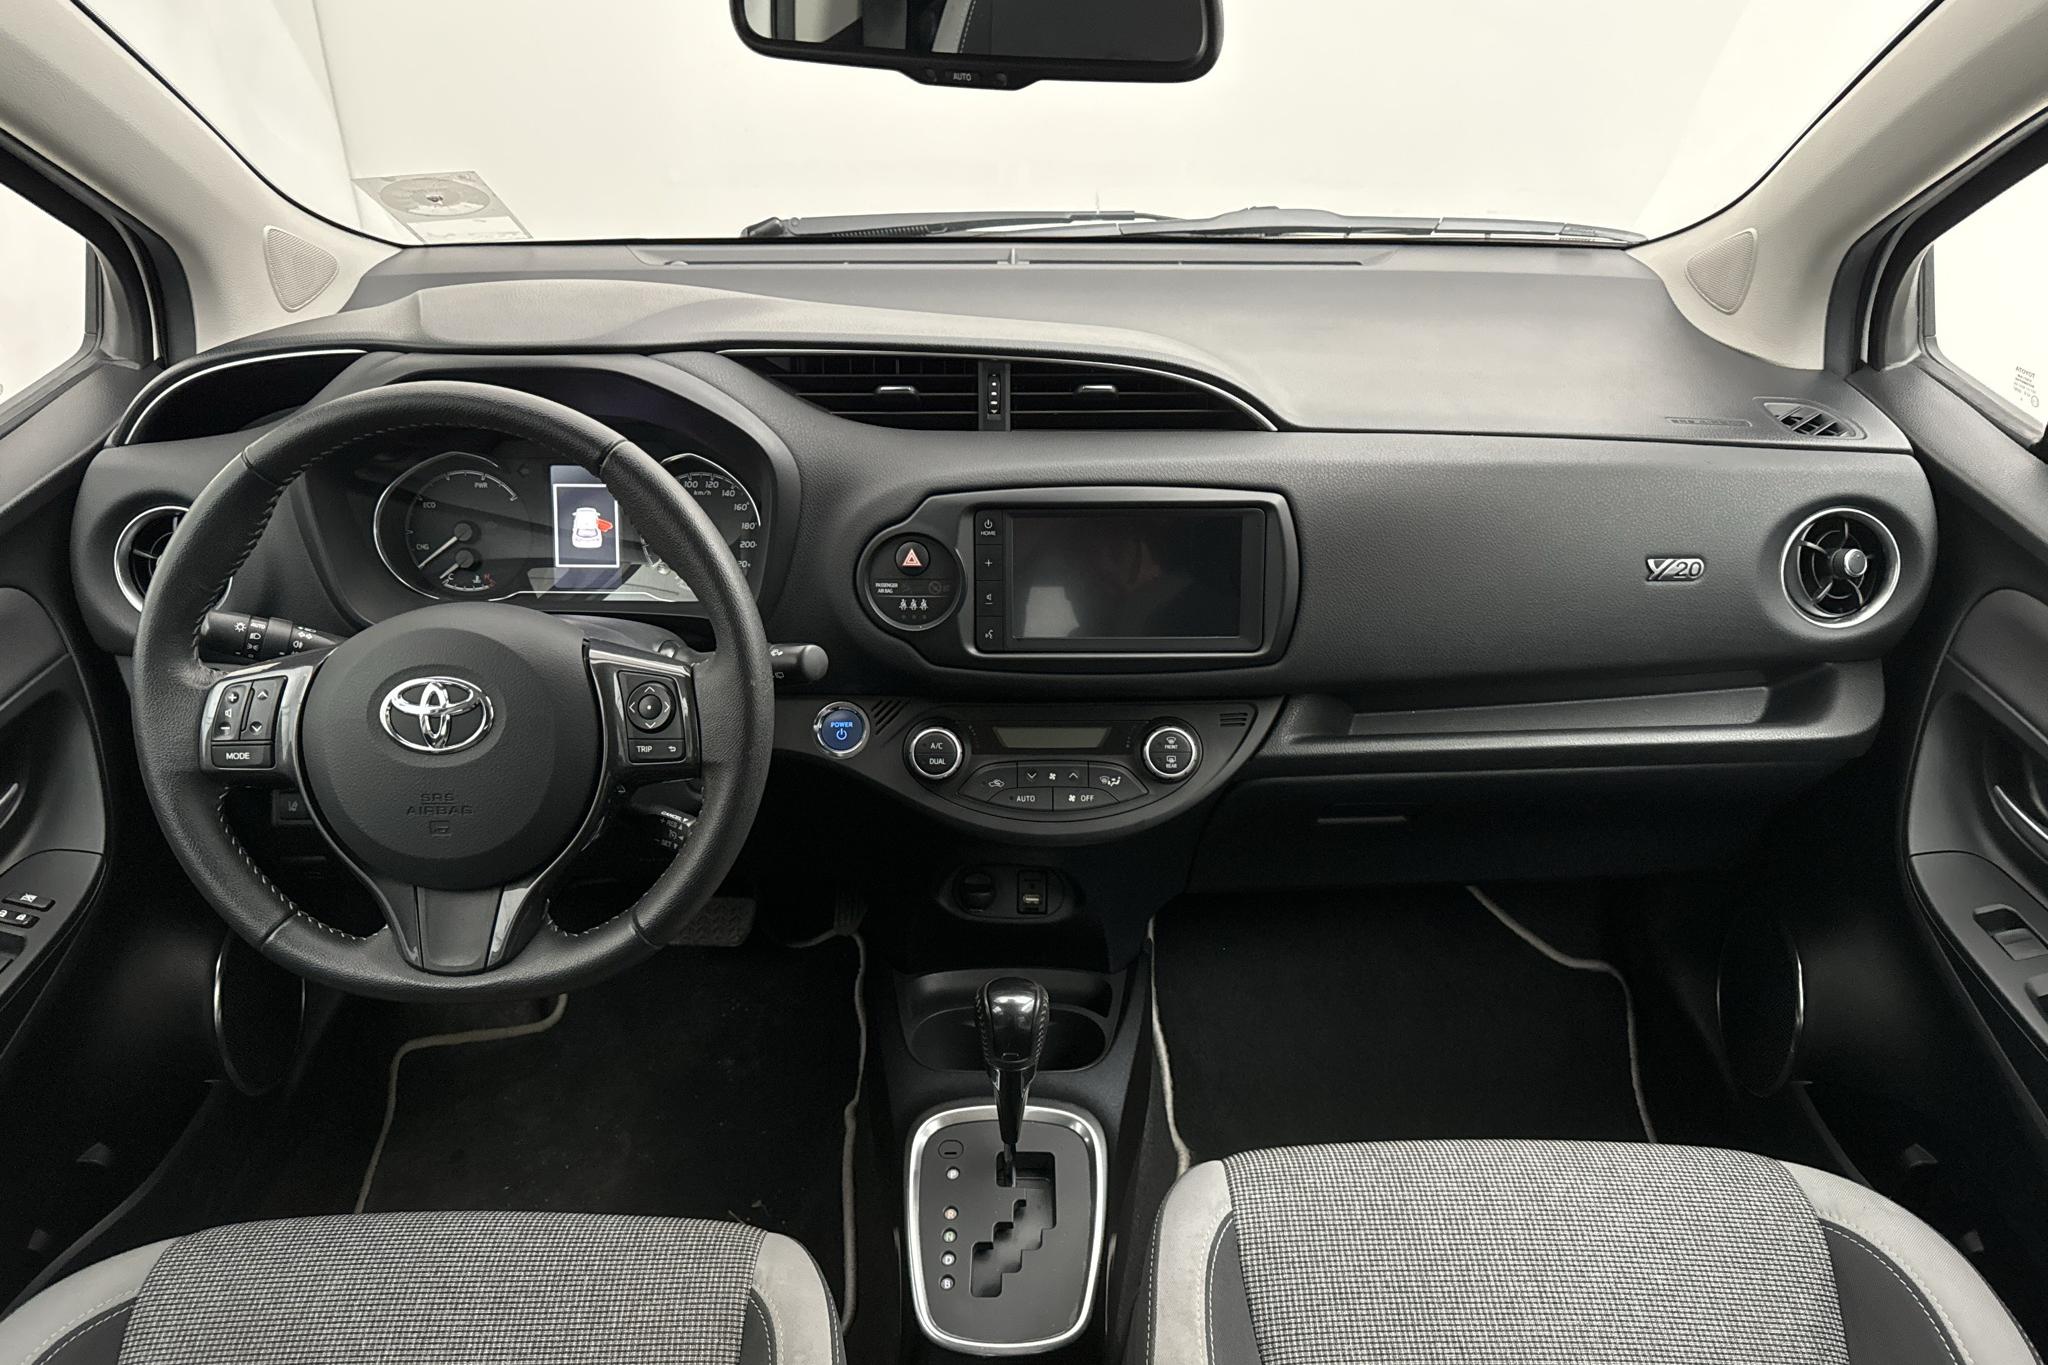 Toyota Yaris 1.5 Hybrid 5dr (101hk) - 68 940 km - Automaattinen - valkoinen - 2020